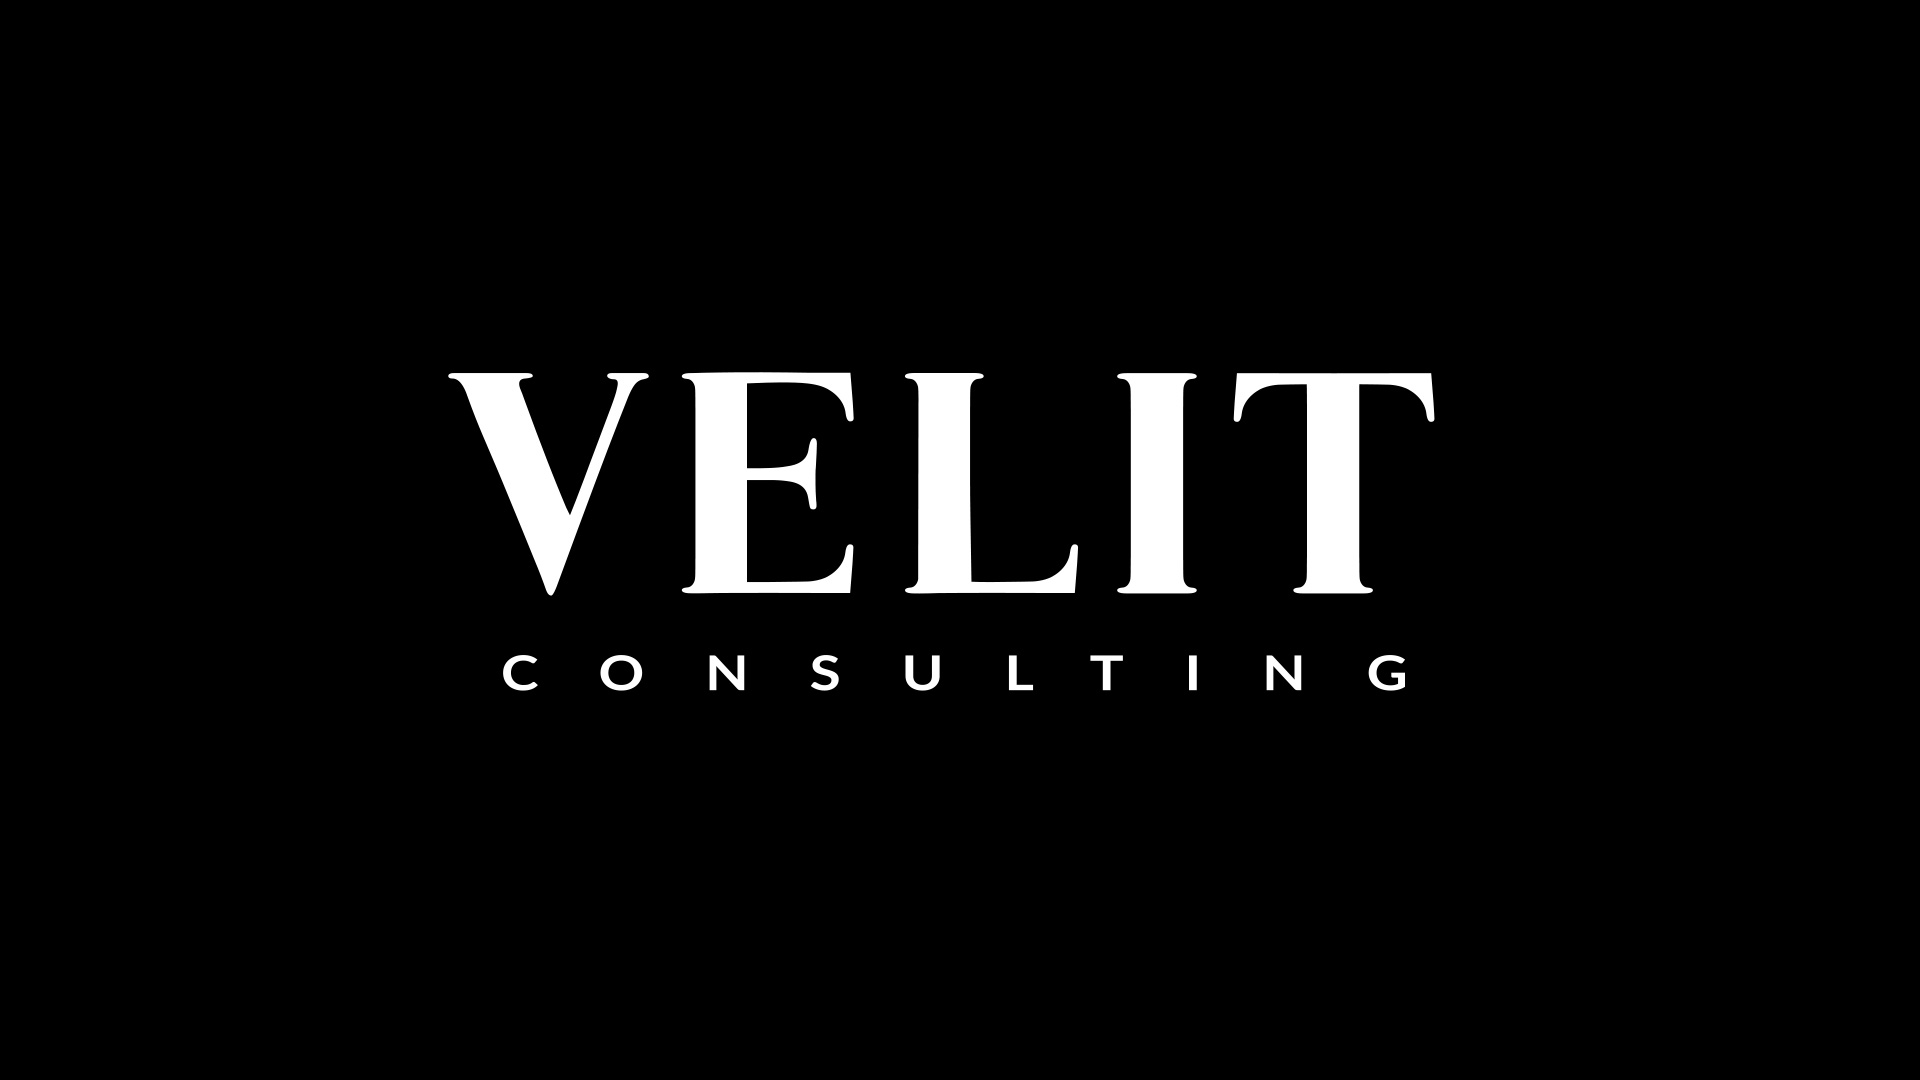 (c) Velit.consulting